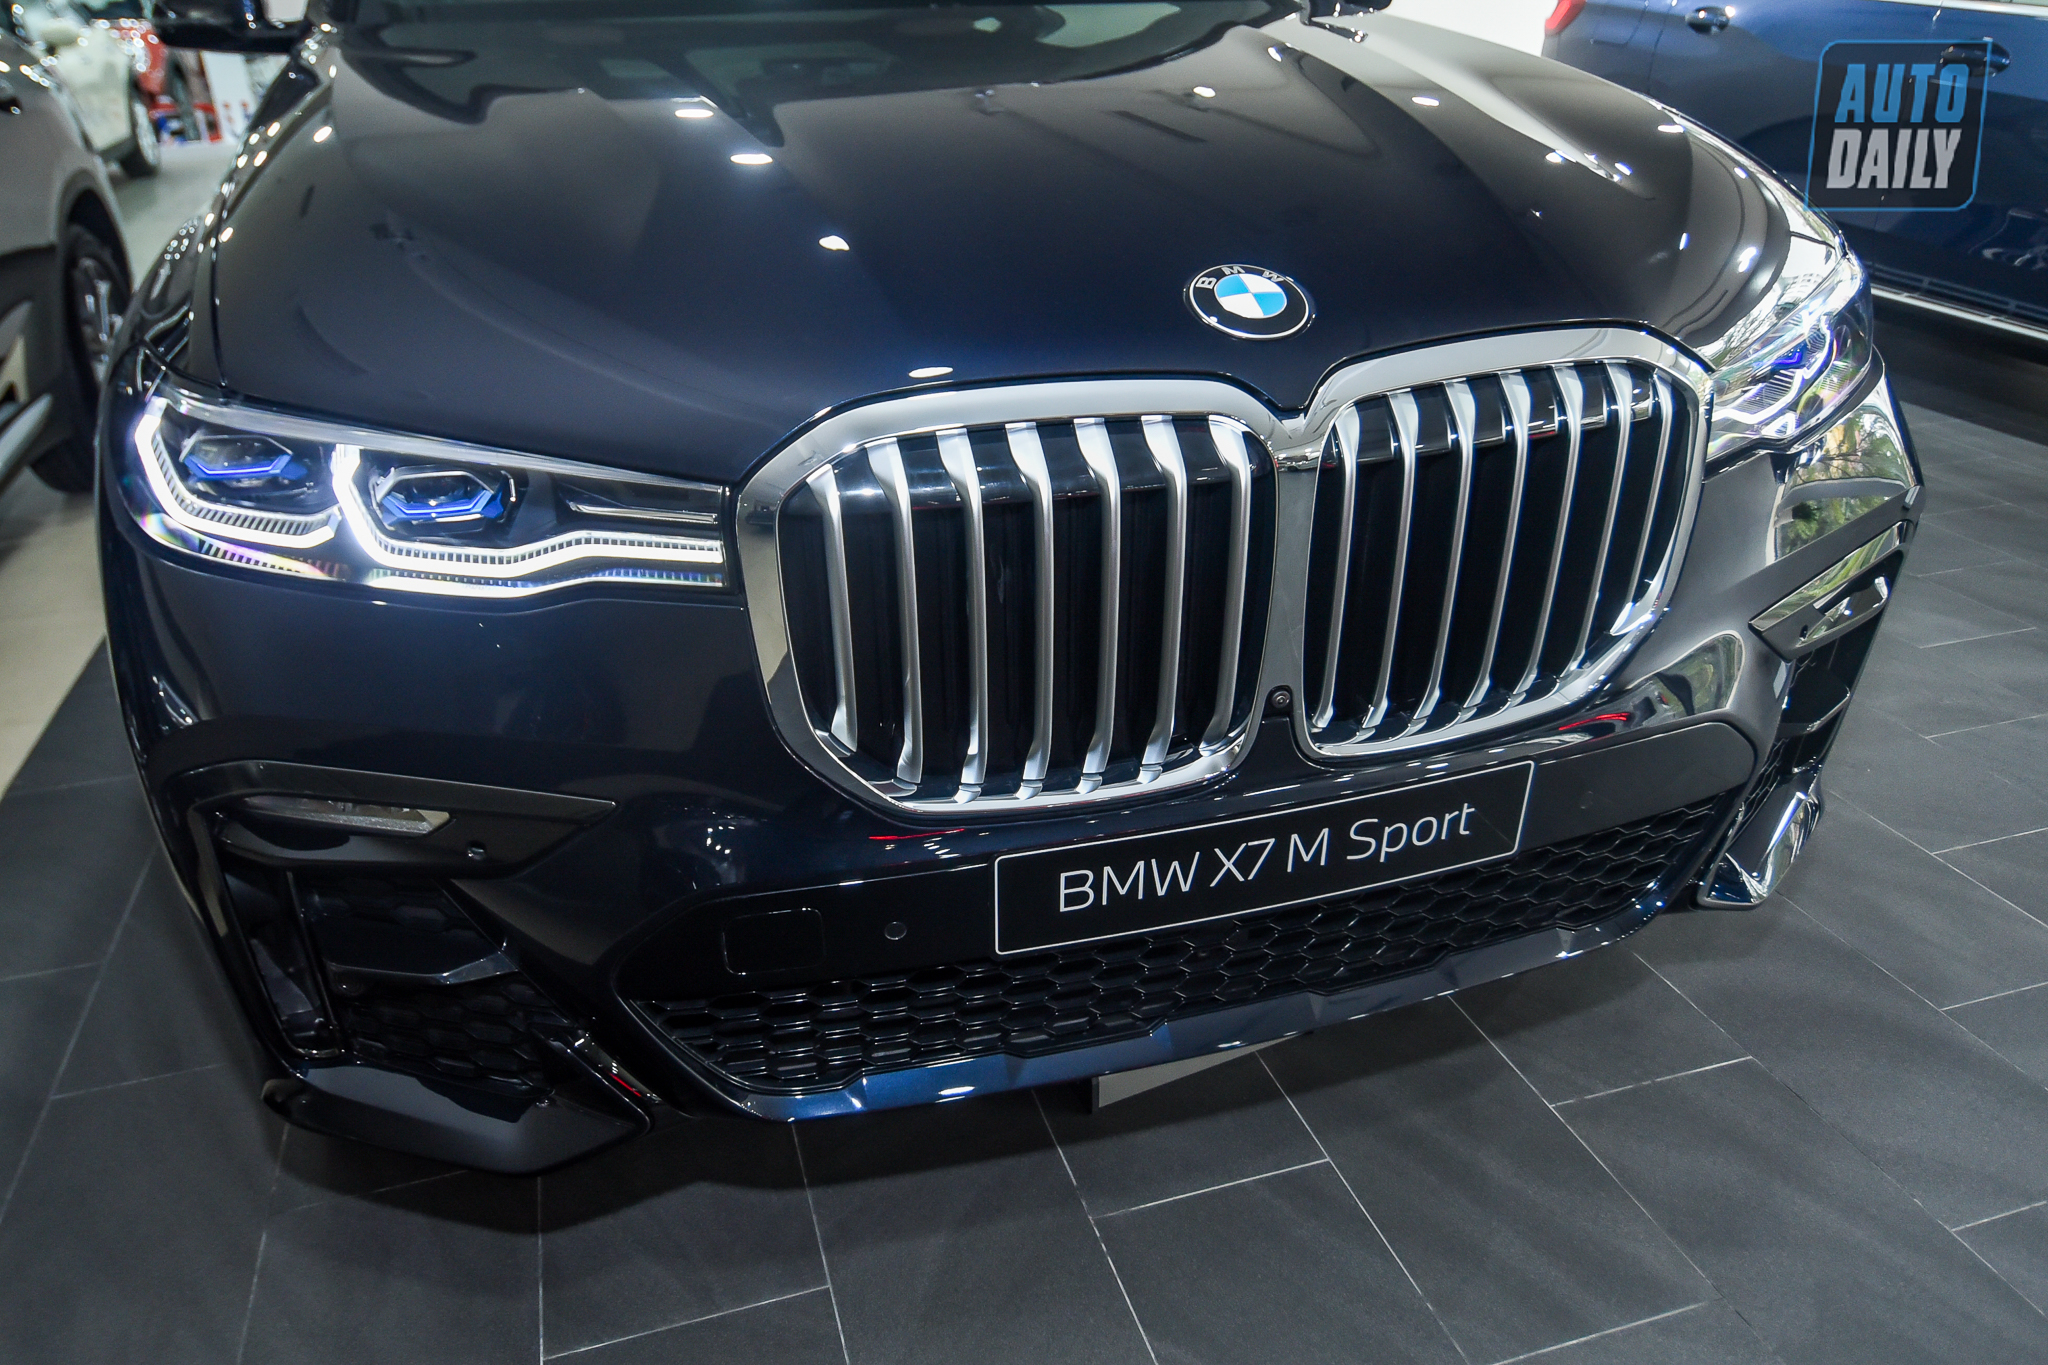 Diện kiến BMW X7 M-Sport 2021 chính hãng giá hơn 5,8 tỷ đồng dsc-6815.jpg